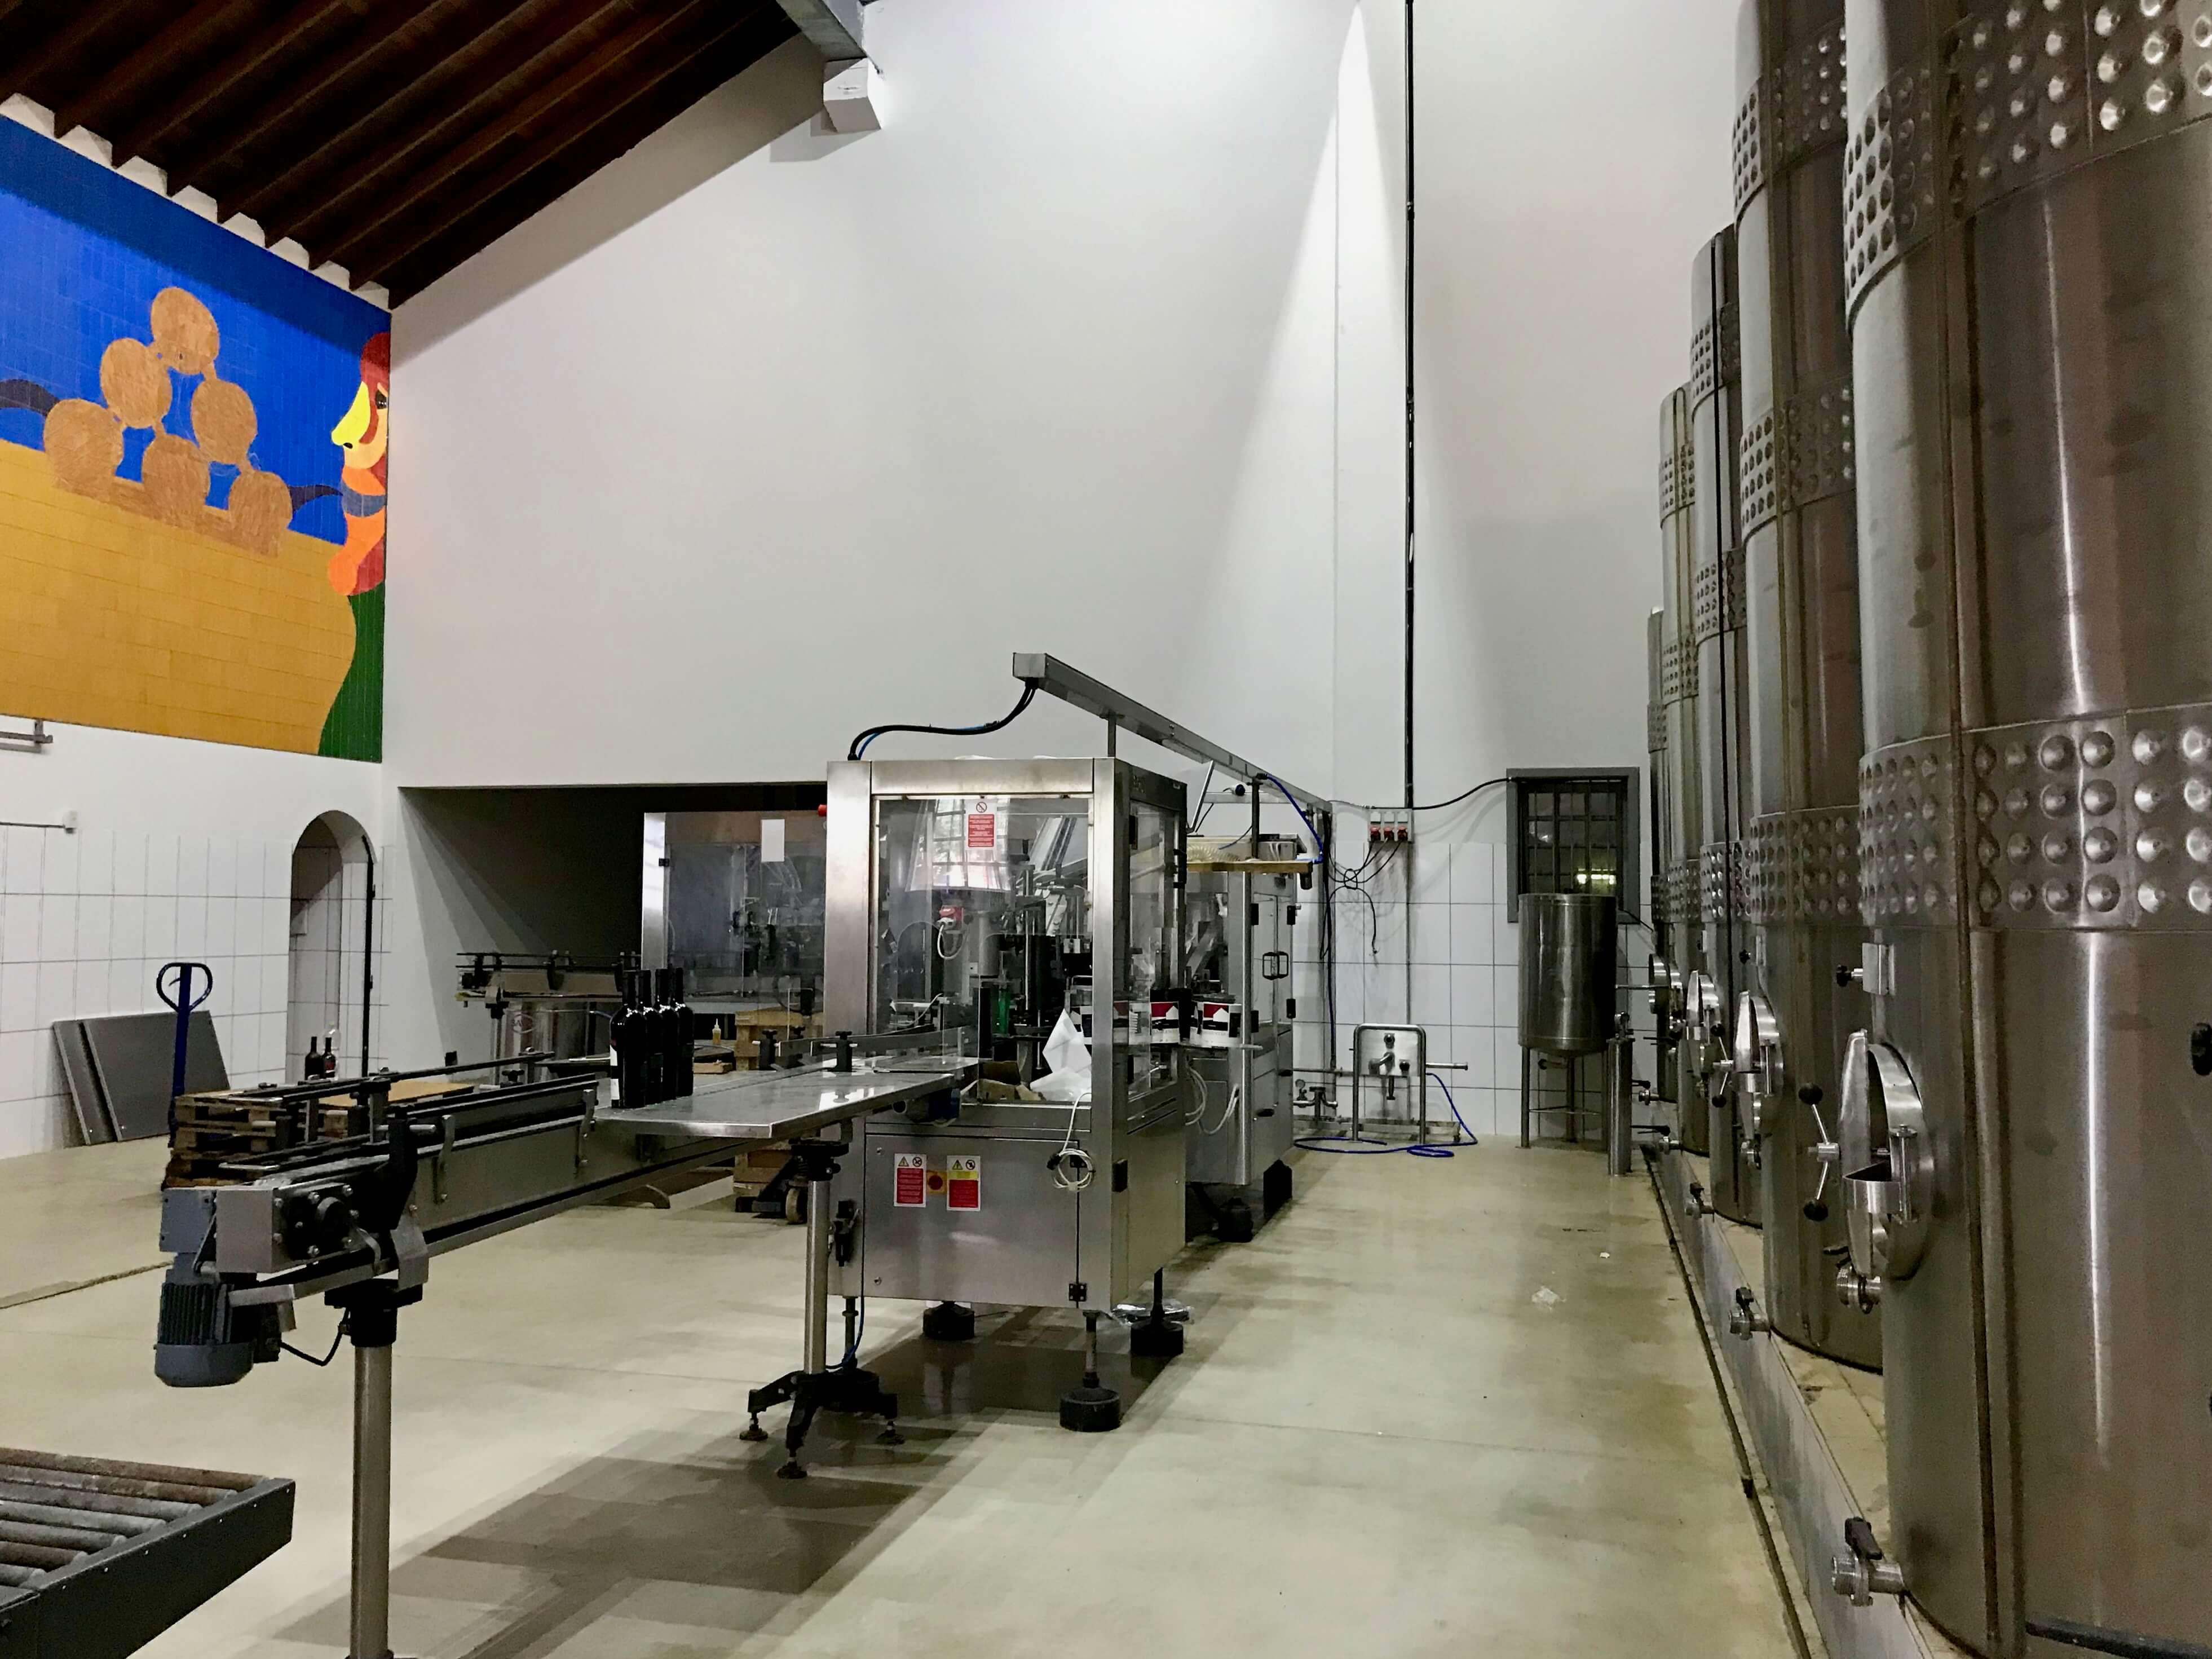 ambiente interno com equipamentos de produção do vinho